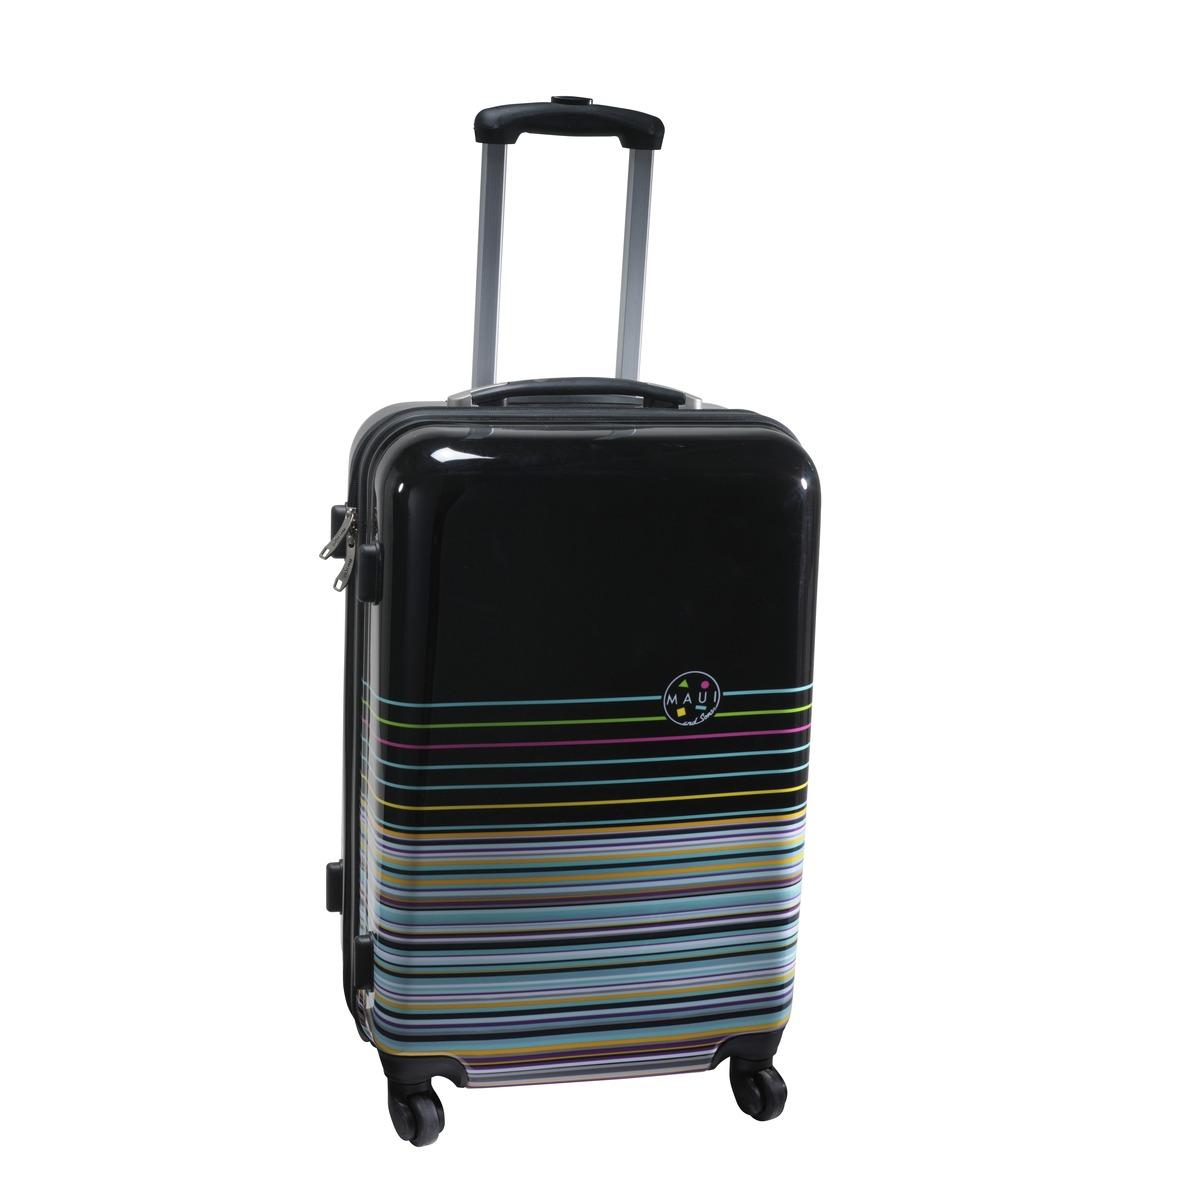 Valise trolley 4 roues 360° avec sac shopping offert - Hauteur 61 cm - Noir, bleu